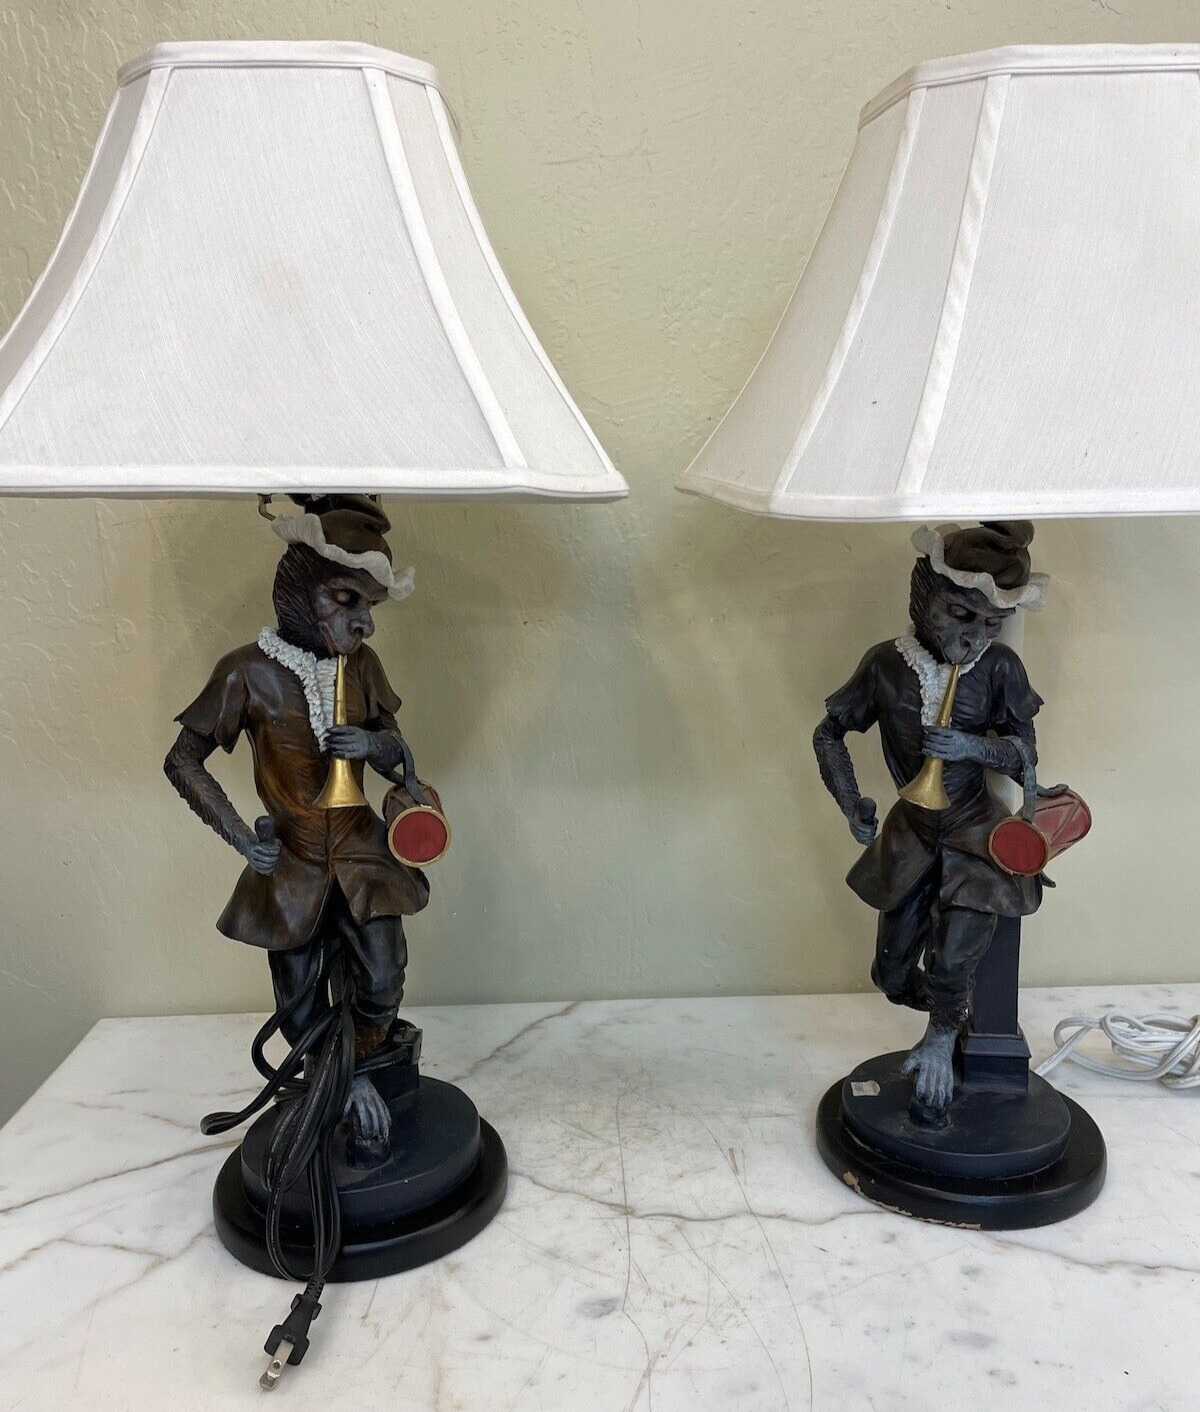 Unique Pair of Monkey Table Lamps